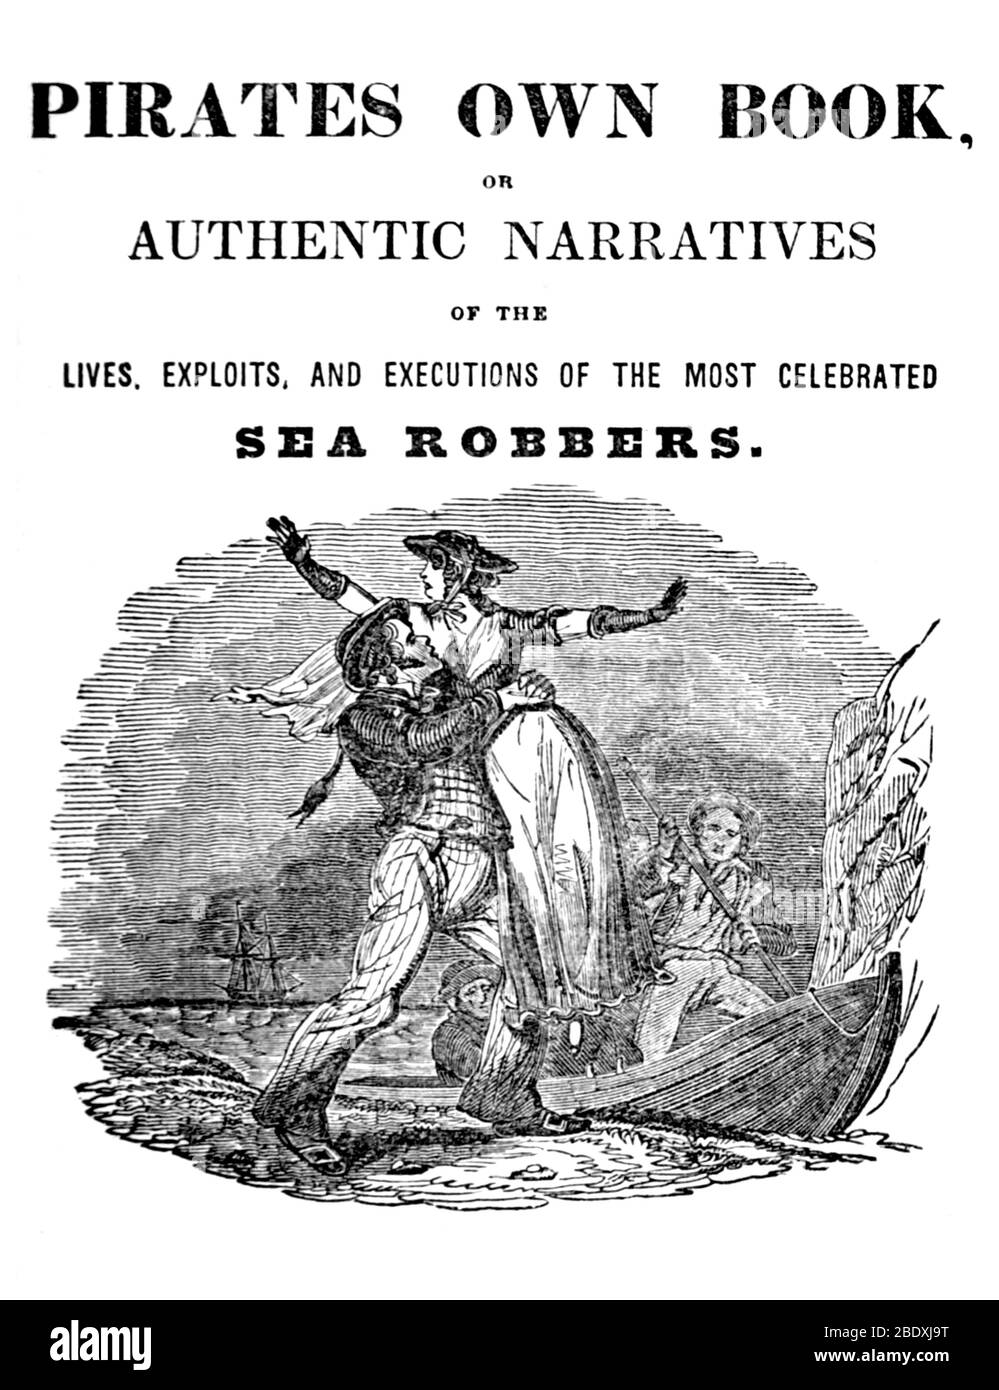 Pirates Own Book, 1837 Stock Photo